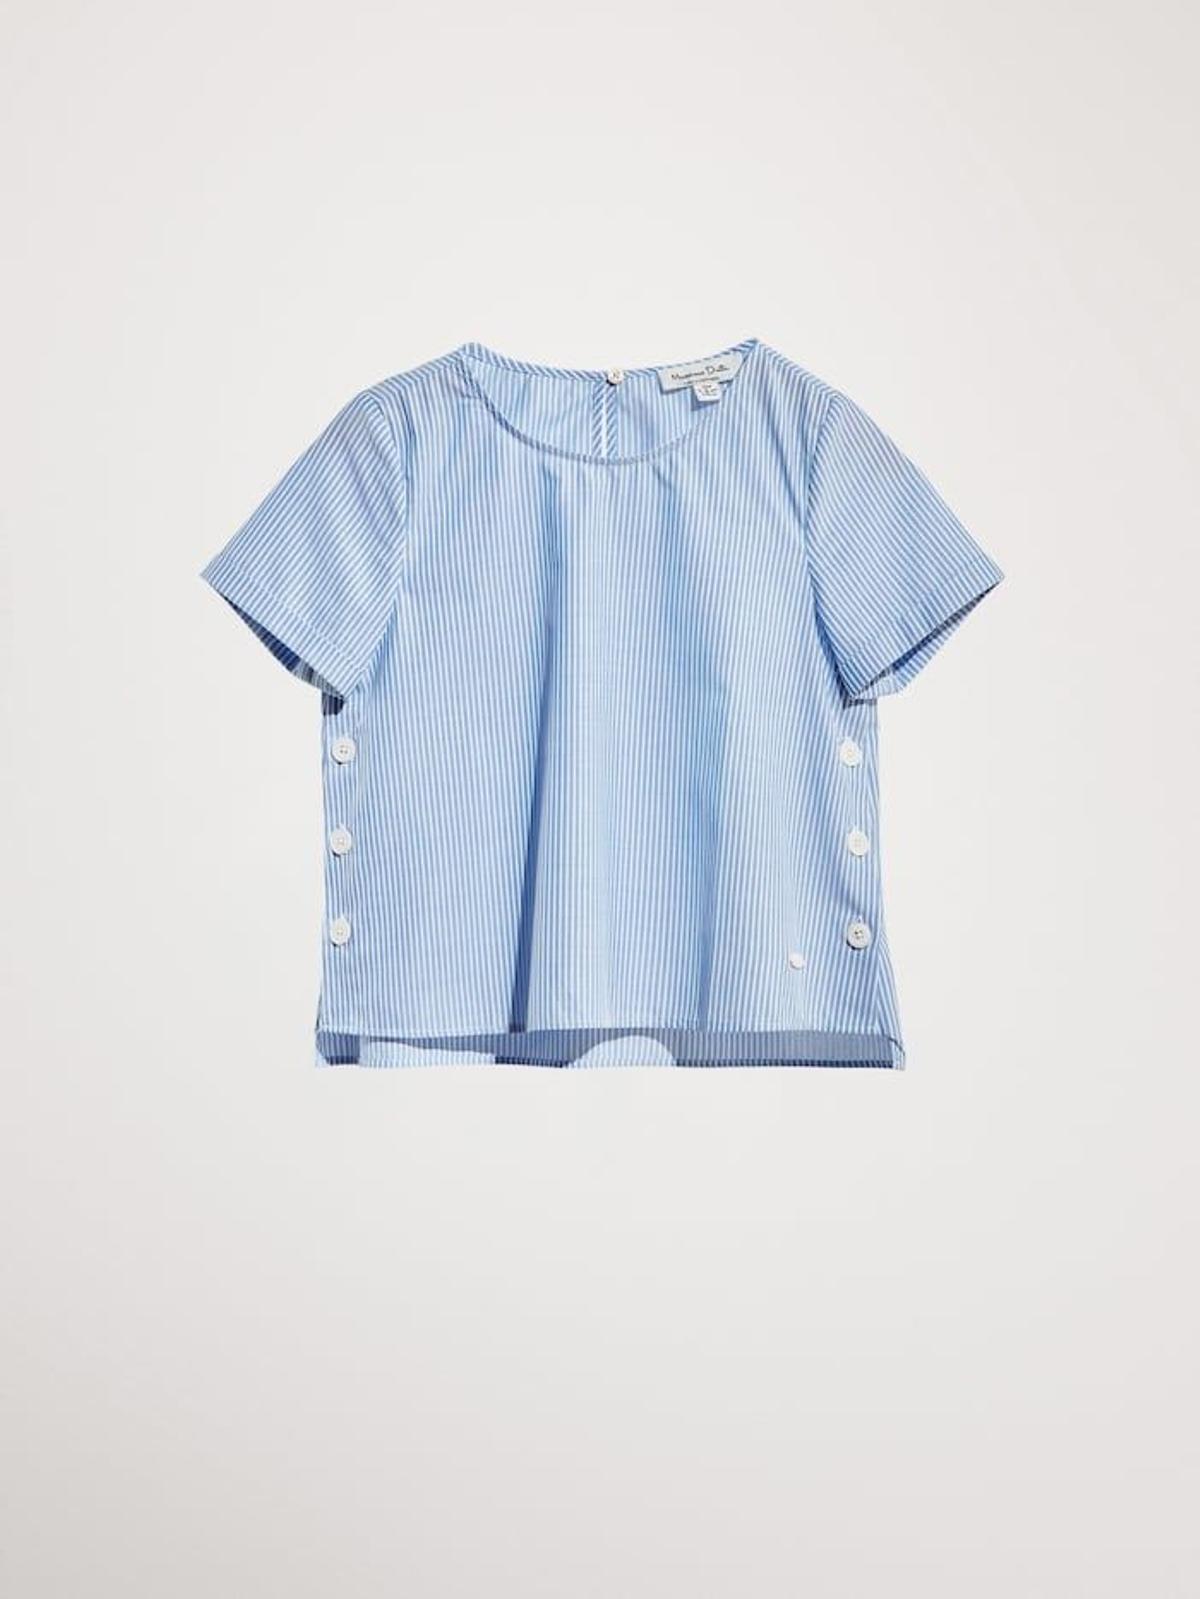 Camisa a rayas azules y blancas de corte evasé firmada por Massimo Dutti que han llevado tanto la infanta Sofía como la princesa Leonor